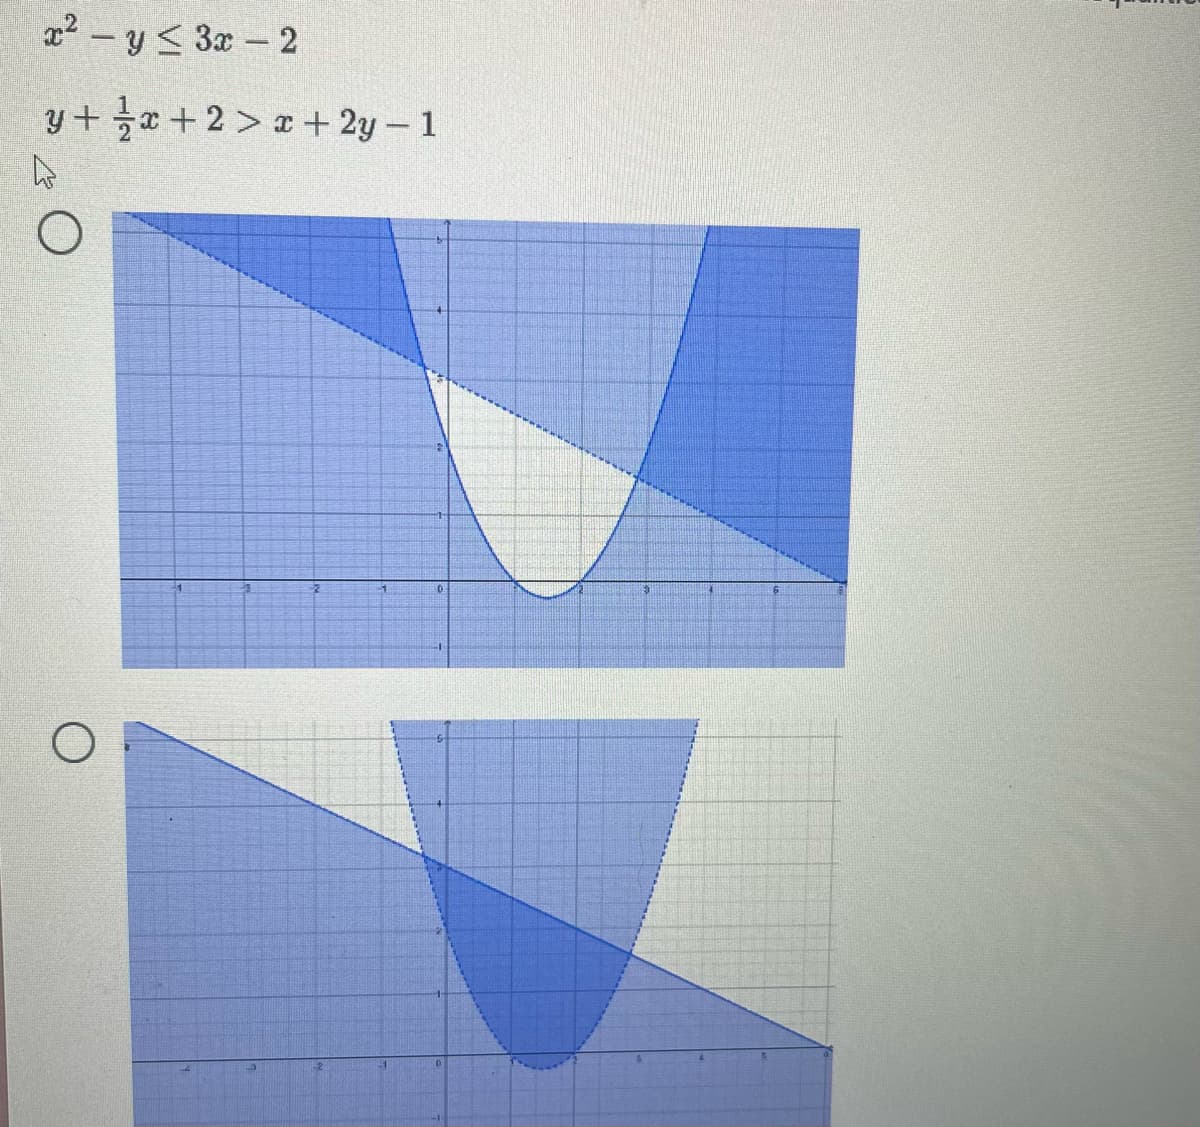 x²- y ≤ 3x-2
y+x+2x+2y-1